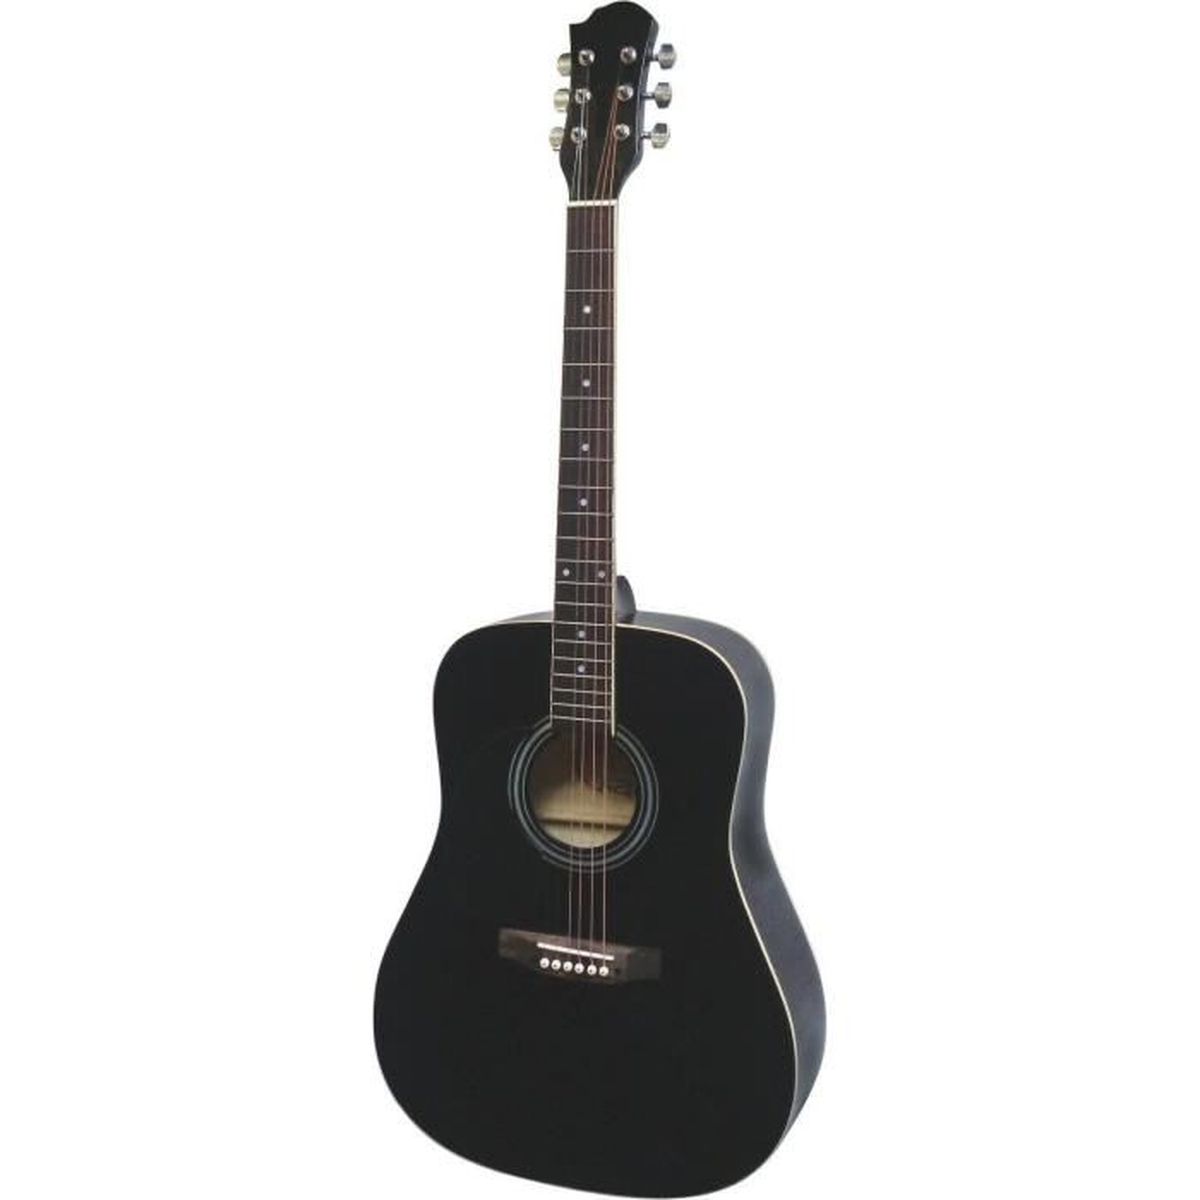 ParaCity Étui en cuir PU pour guitare acoustique folk Rembourré imperméable pour guitares de 99 à 104 cm Style A 